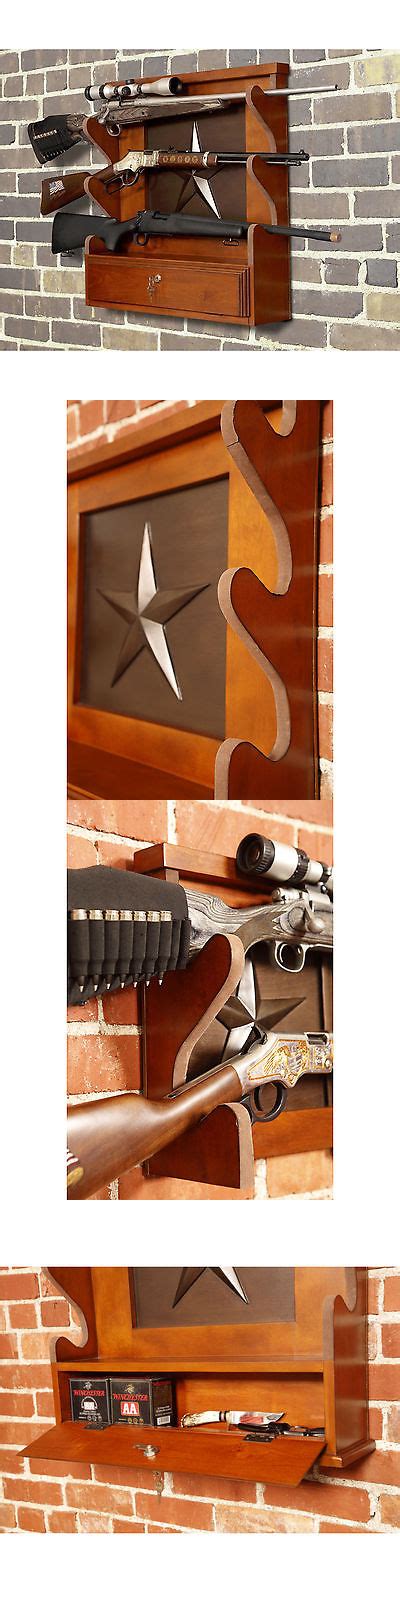 Wall rack gun with lock. Pin on gun stuff